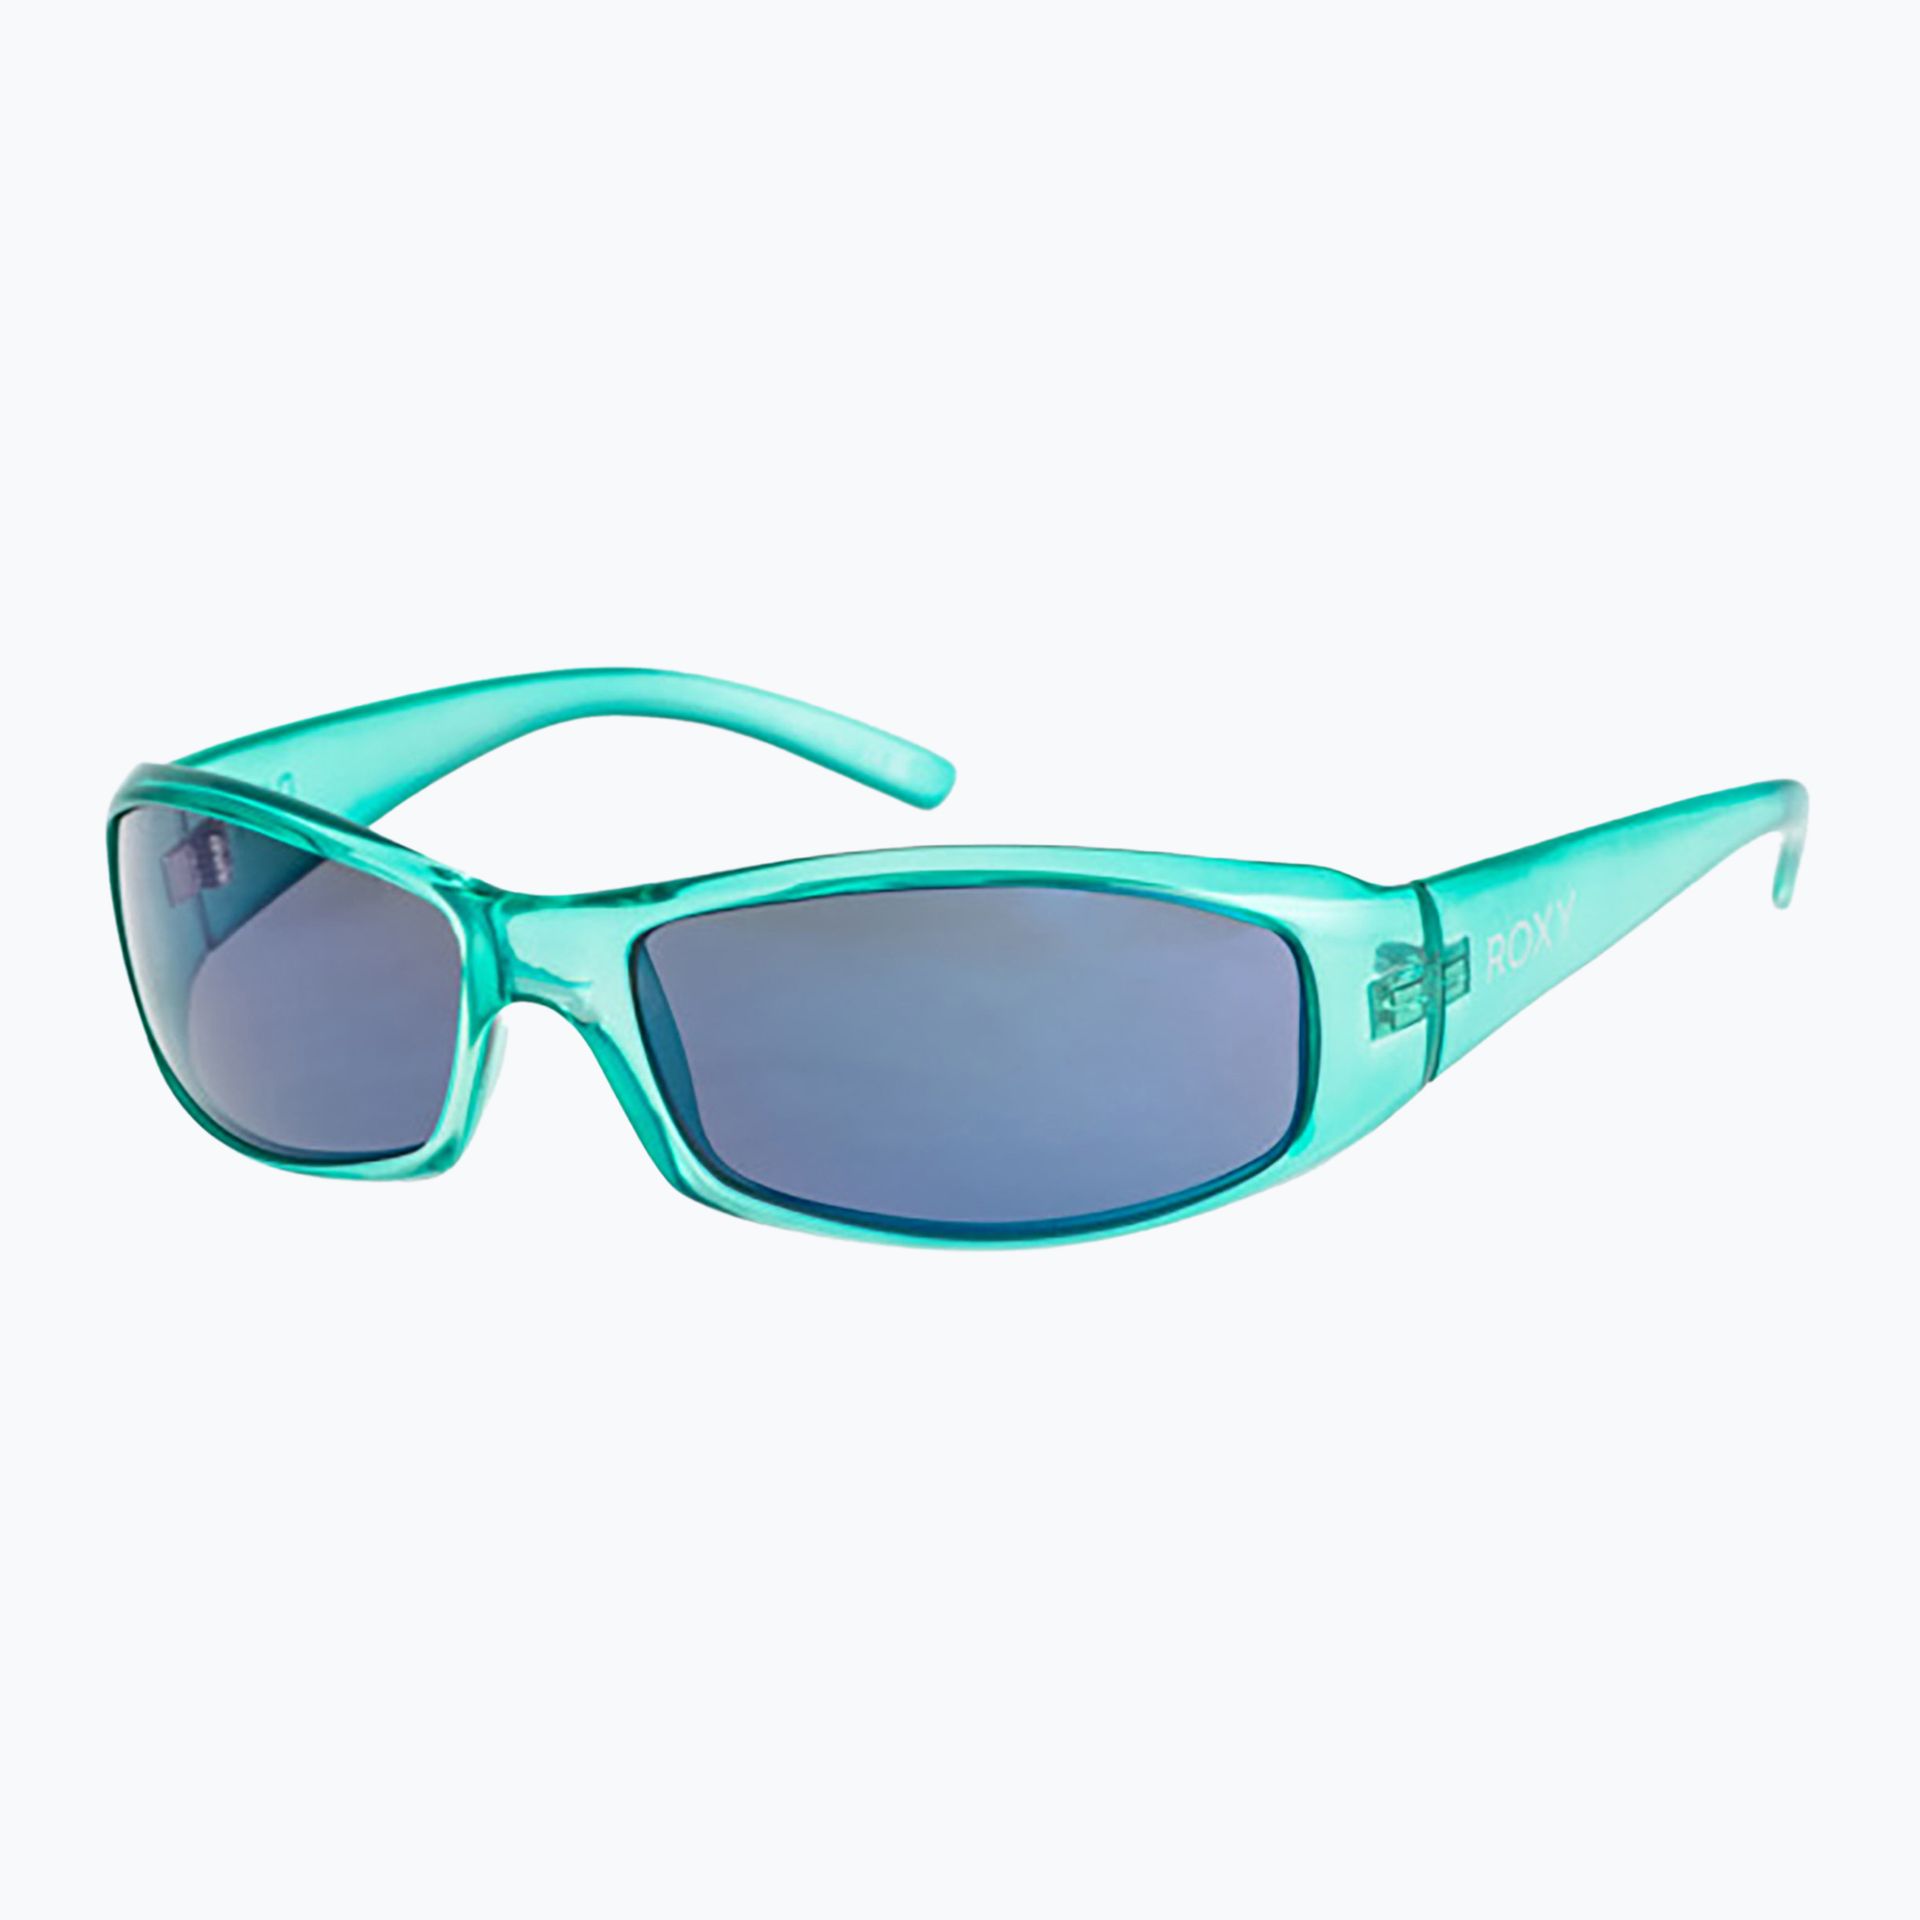 Okulary przeciwsłoneczne damskie Roxy Donna aqua/ml blue | WYSYŁKA W 24H | 30 DNI NA ZWROT